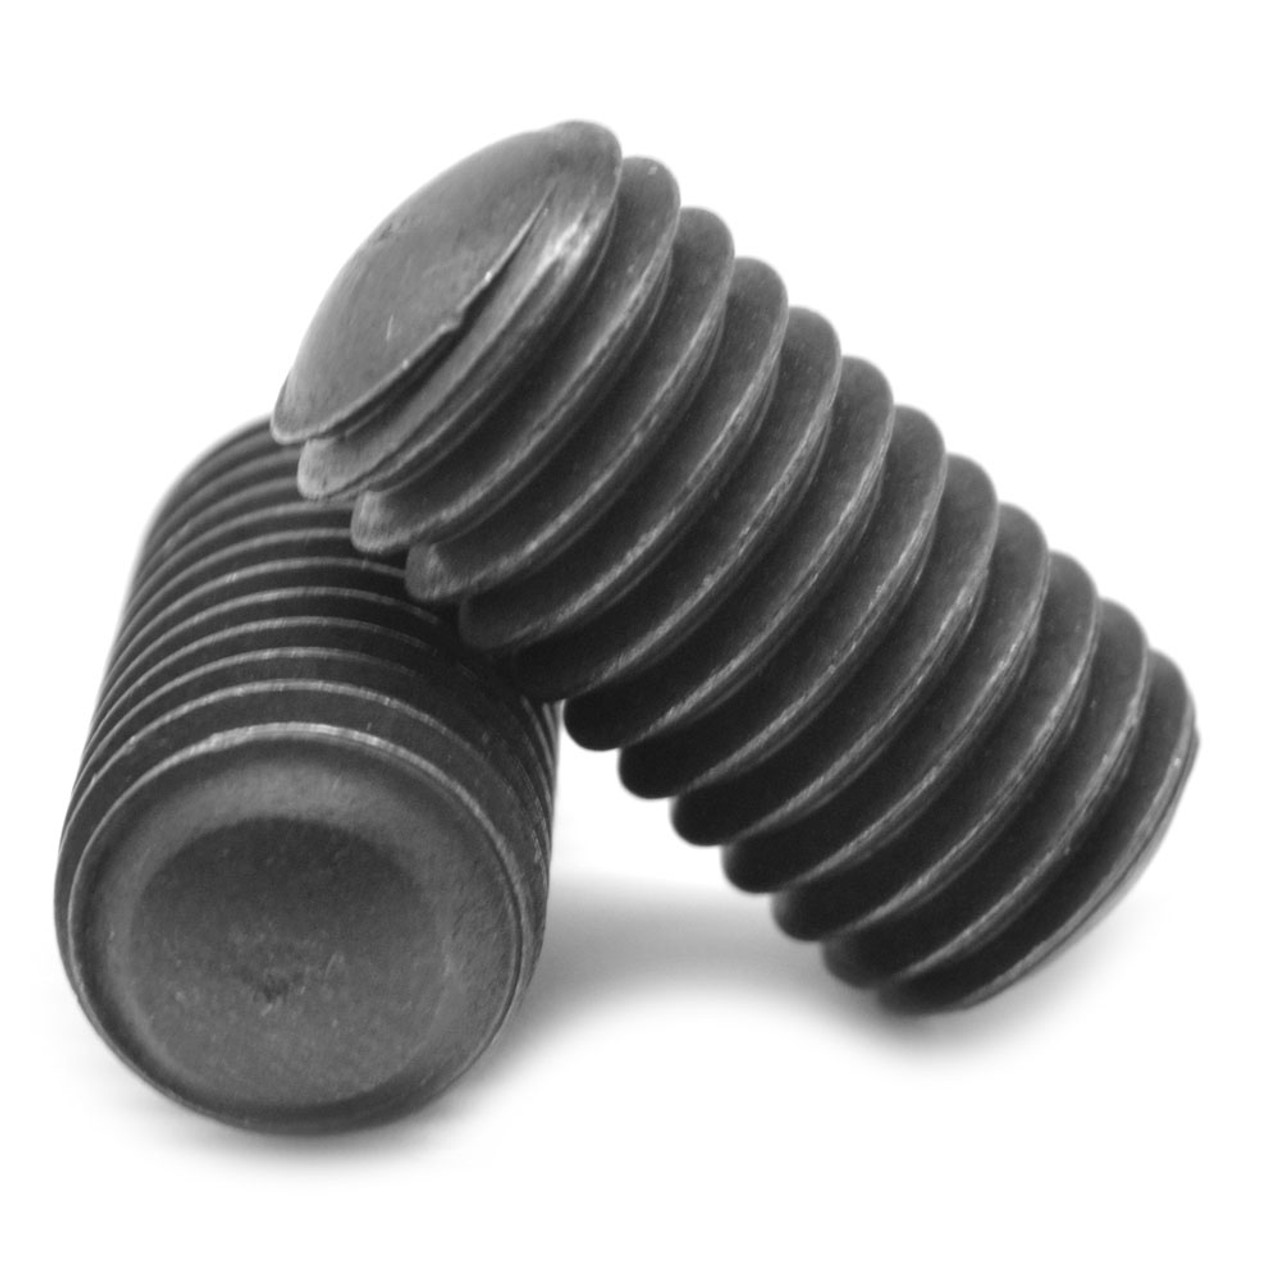 1/2"-13 x 7/8" Coarse Thread Socket Set Screw Oval Point Alloy Steel Black Oxide